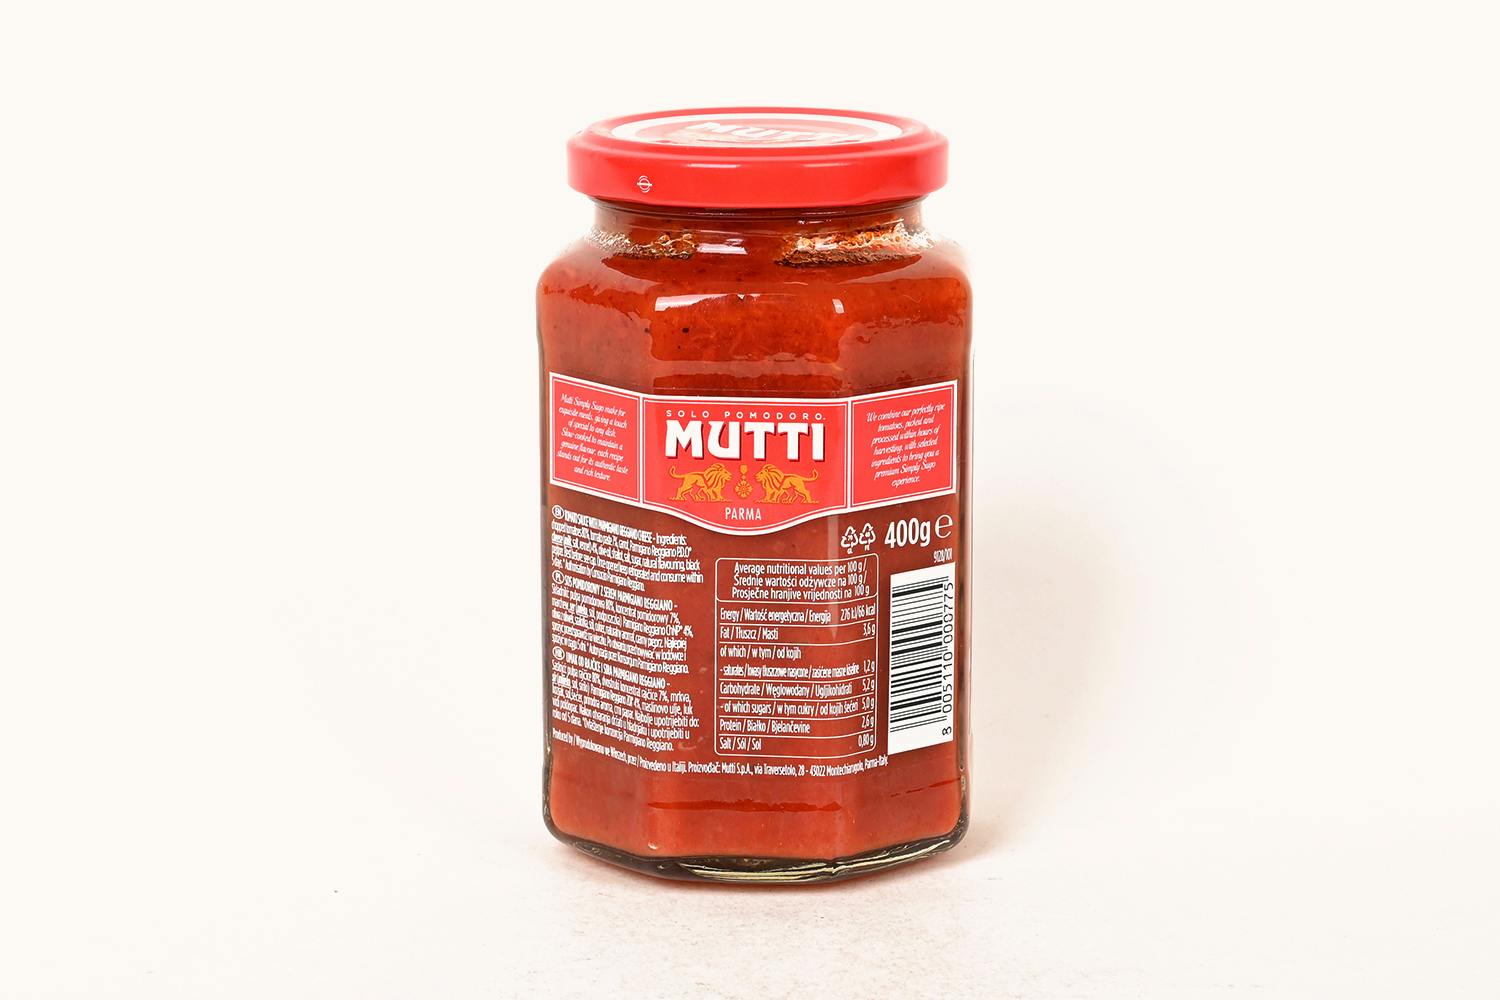 /m/u/mutti-tomato-sauce-parmigiano-regia-400g-2_5z2zgwu8jj41clbz.jpg